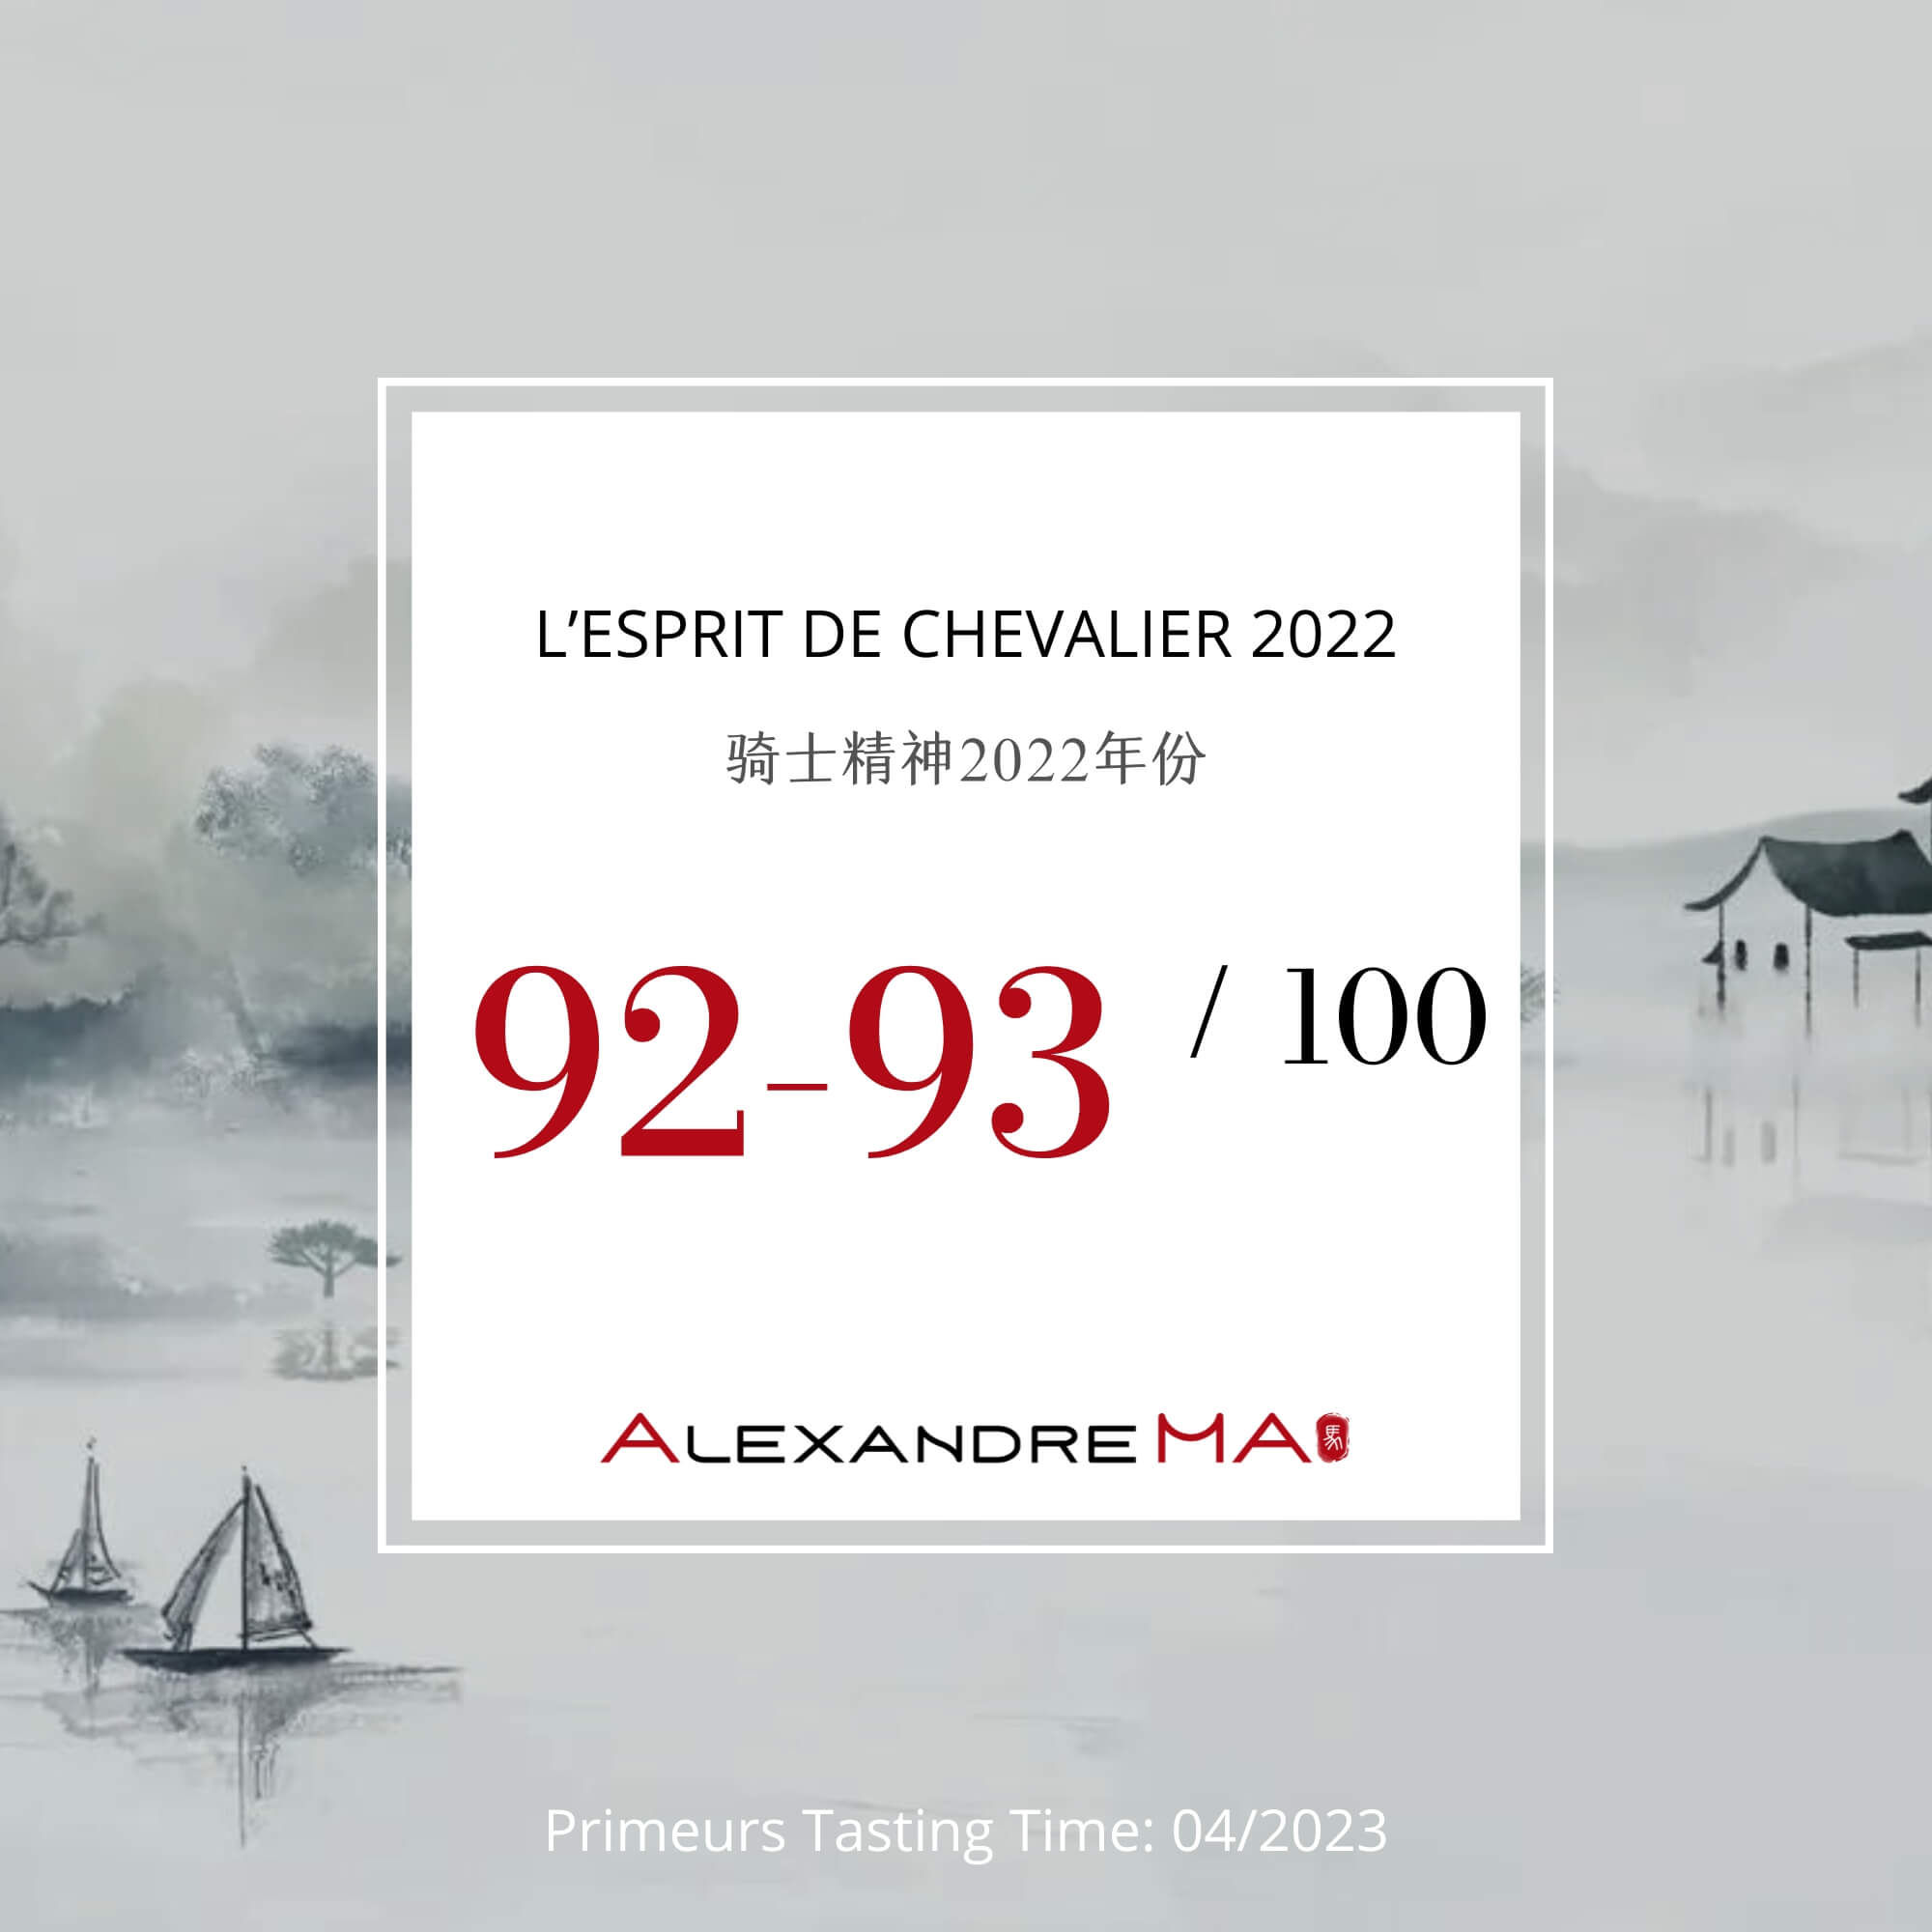 L’Esprit de Chevalier 2022 Primeurs - Alexandre MA